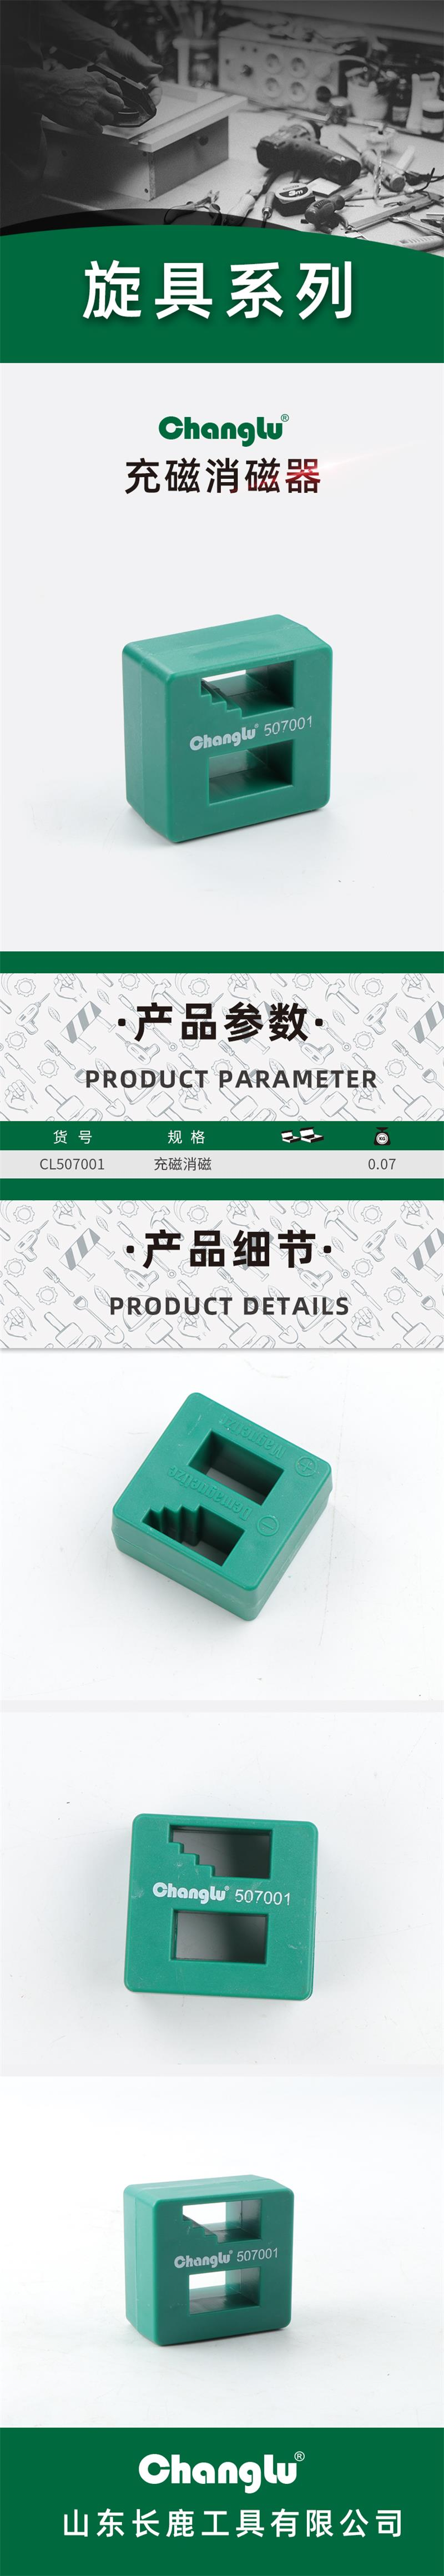 长鹿 CL507001 充磁消磁器-充磁消磁器